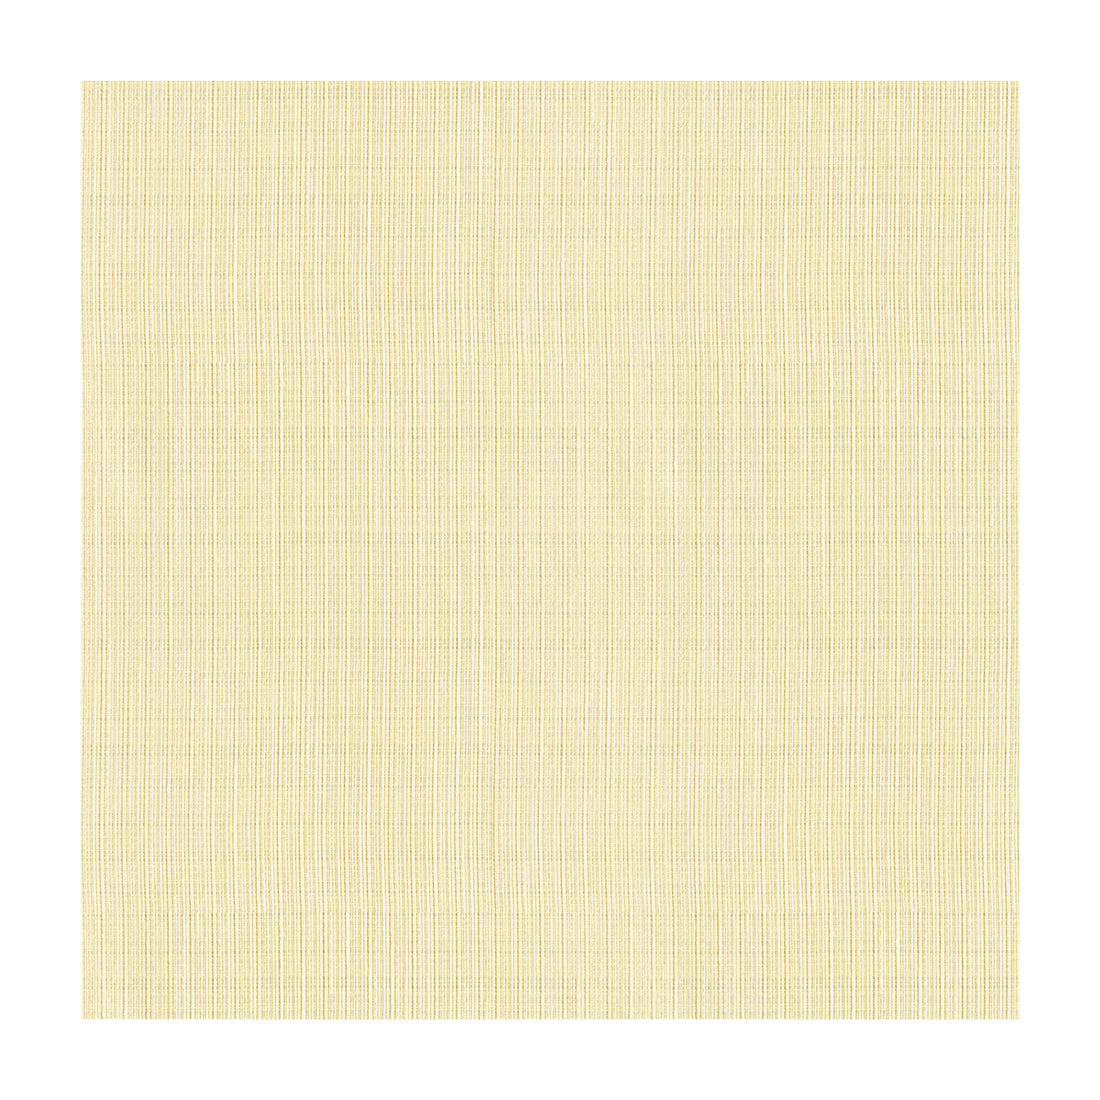 Kravet Basics fabric in 4116-1 color - pattern 4116.1.0 - by Kravet Basics